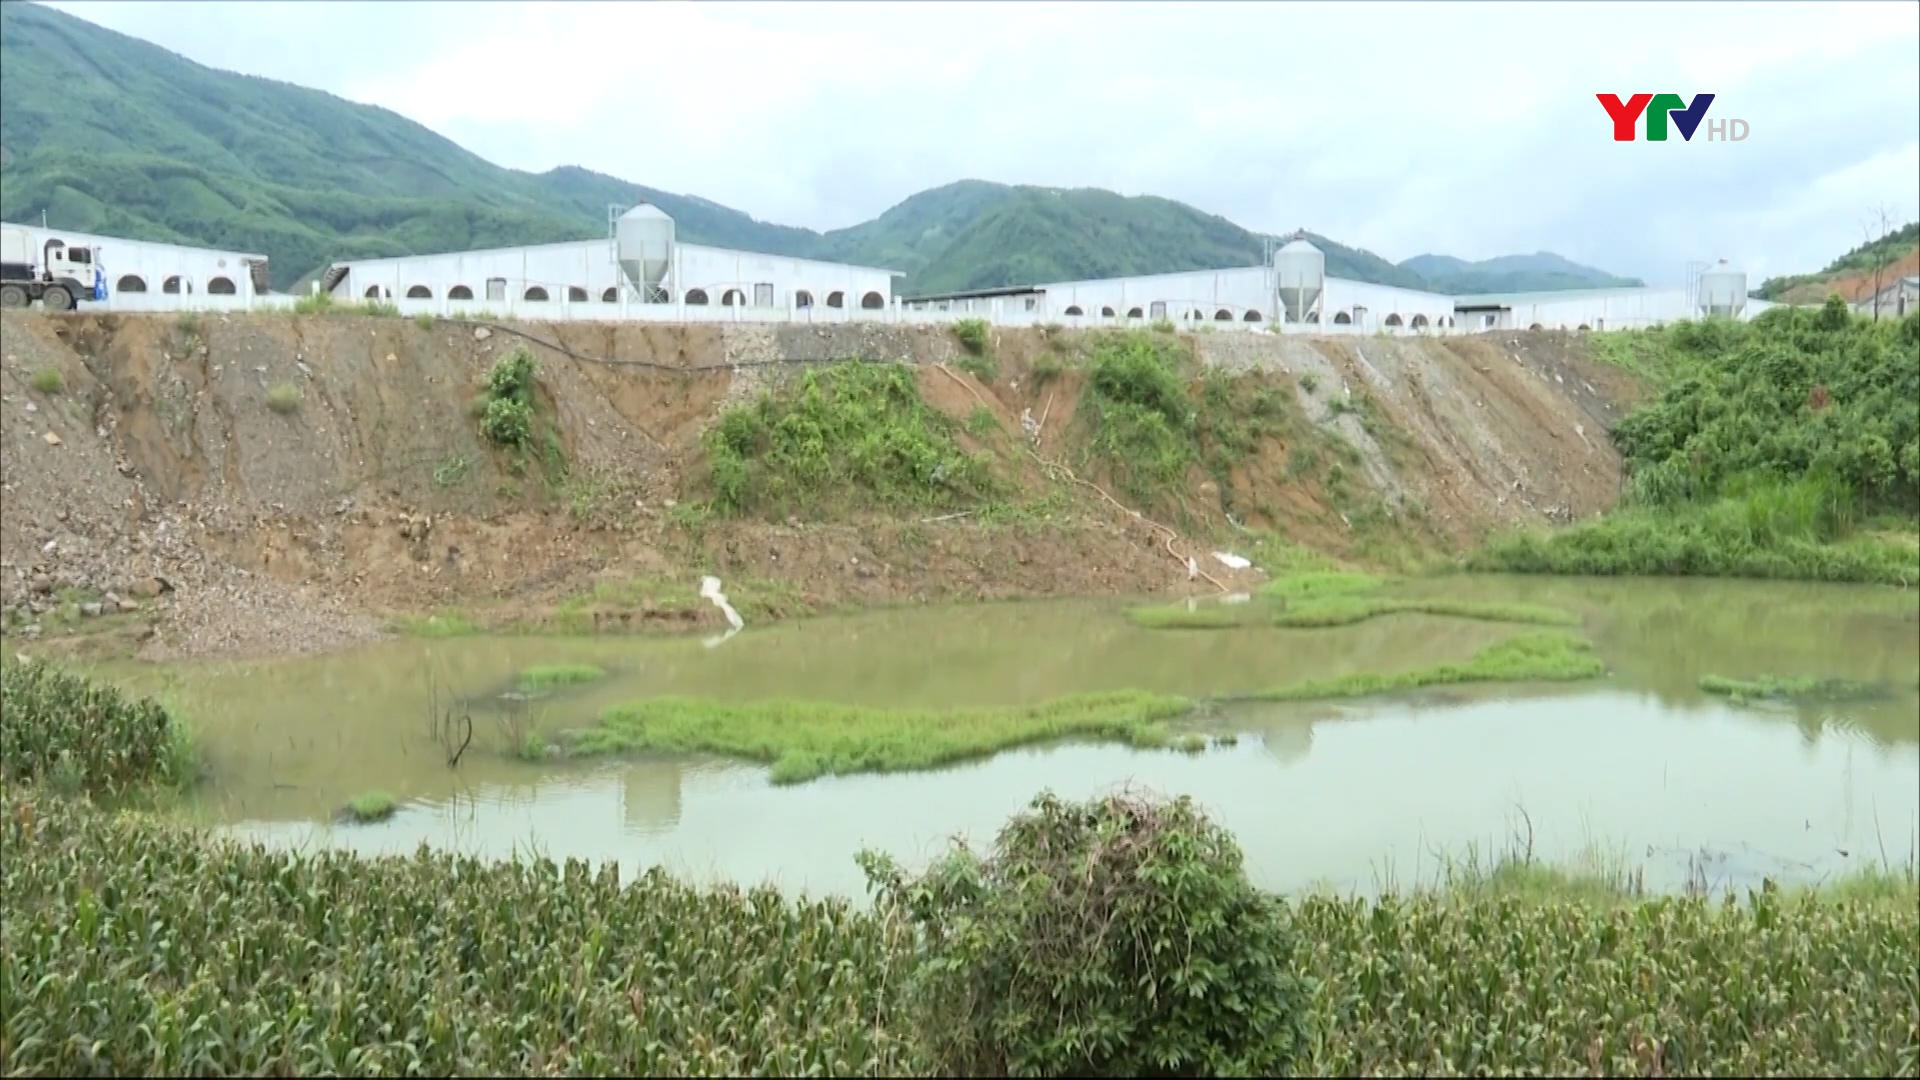 Trang trại nuôi lợn gây ô nhiễm môi trường tại xã Đông An, huyện Văn Yên bị xử phạt gần 300 triệu đồng